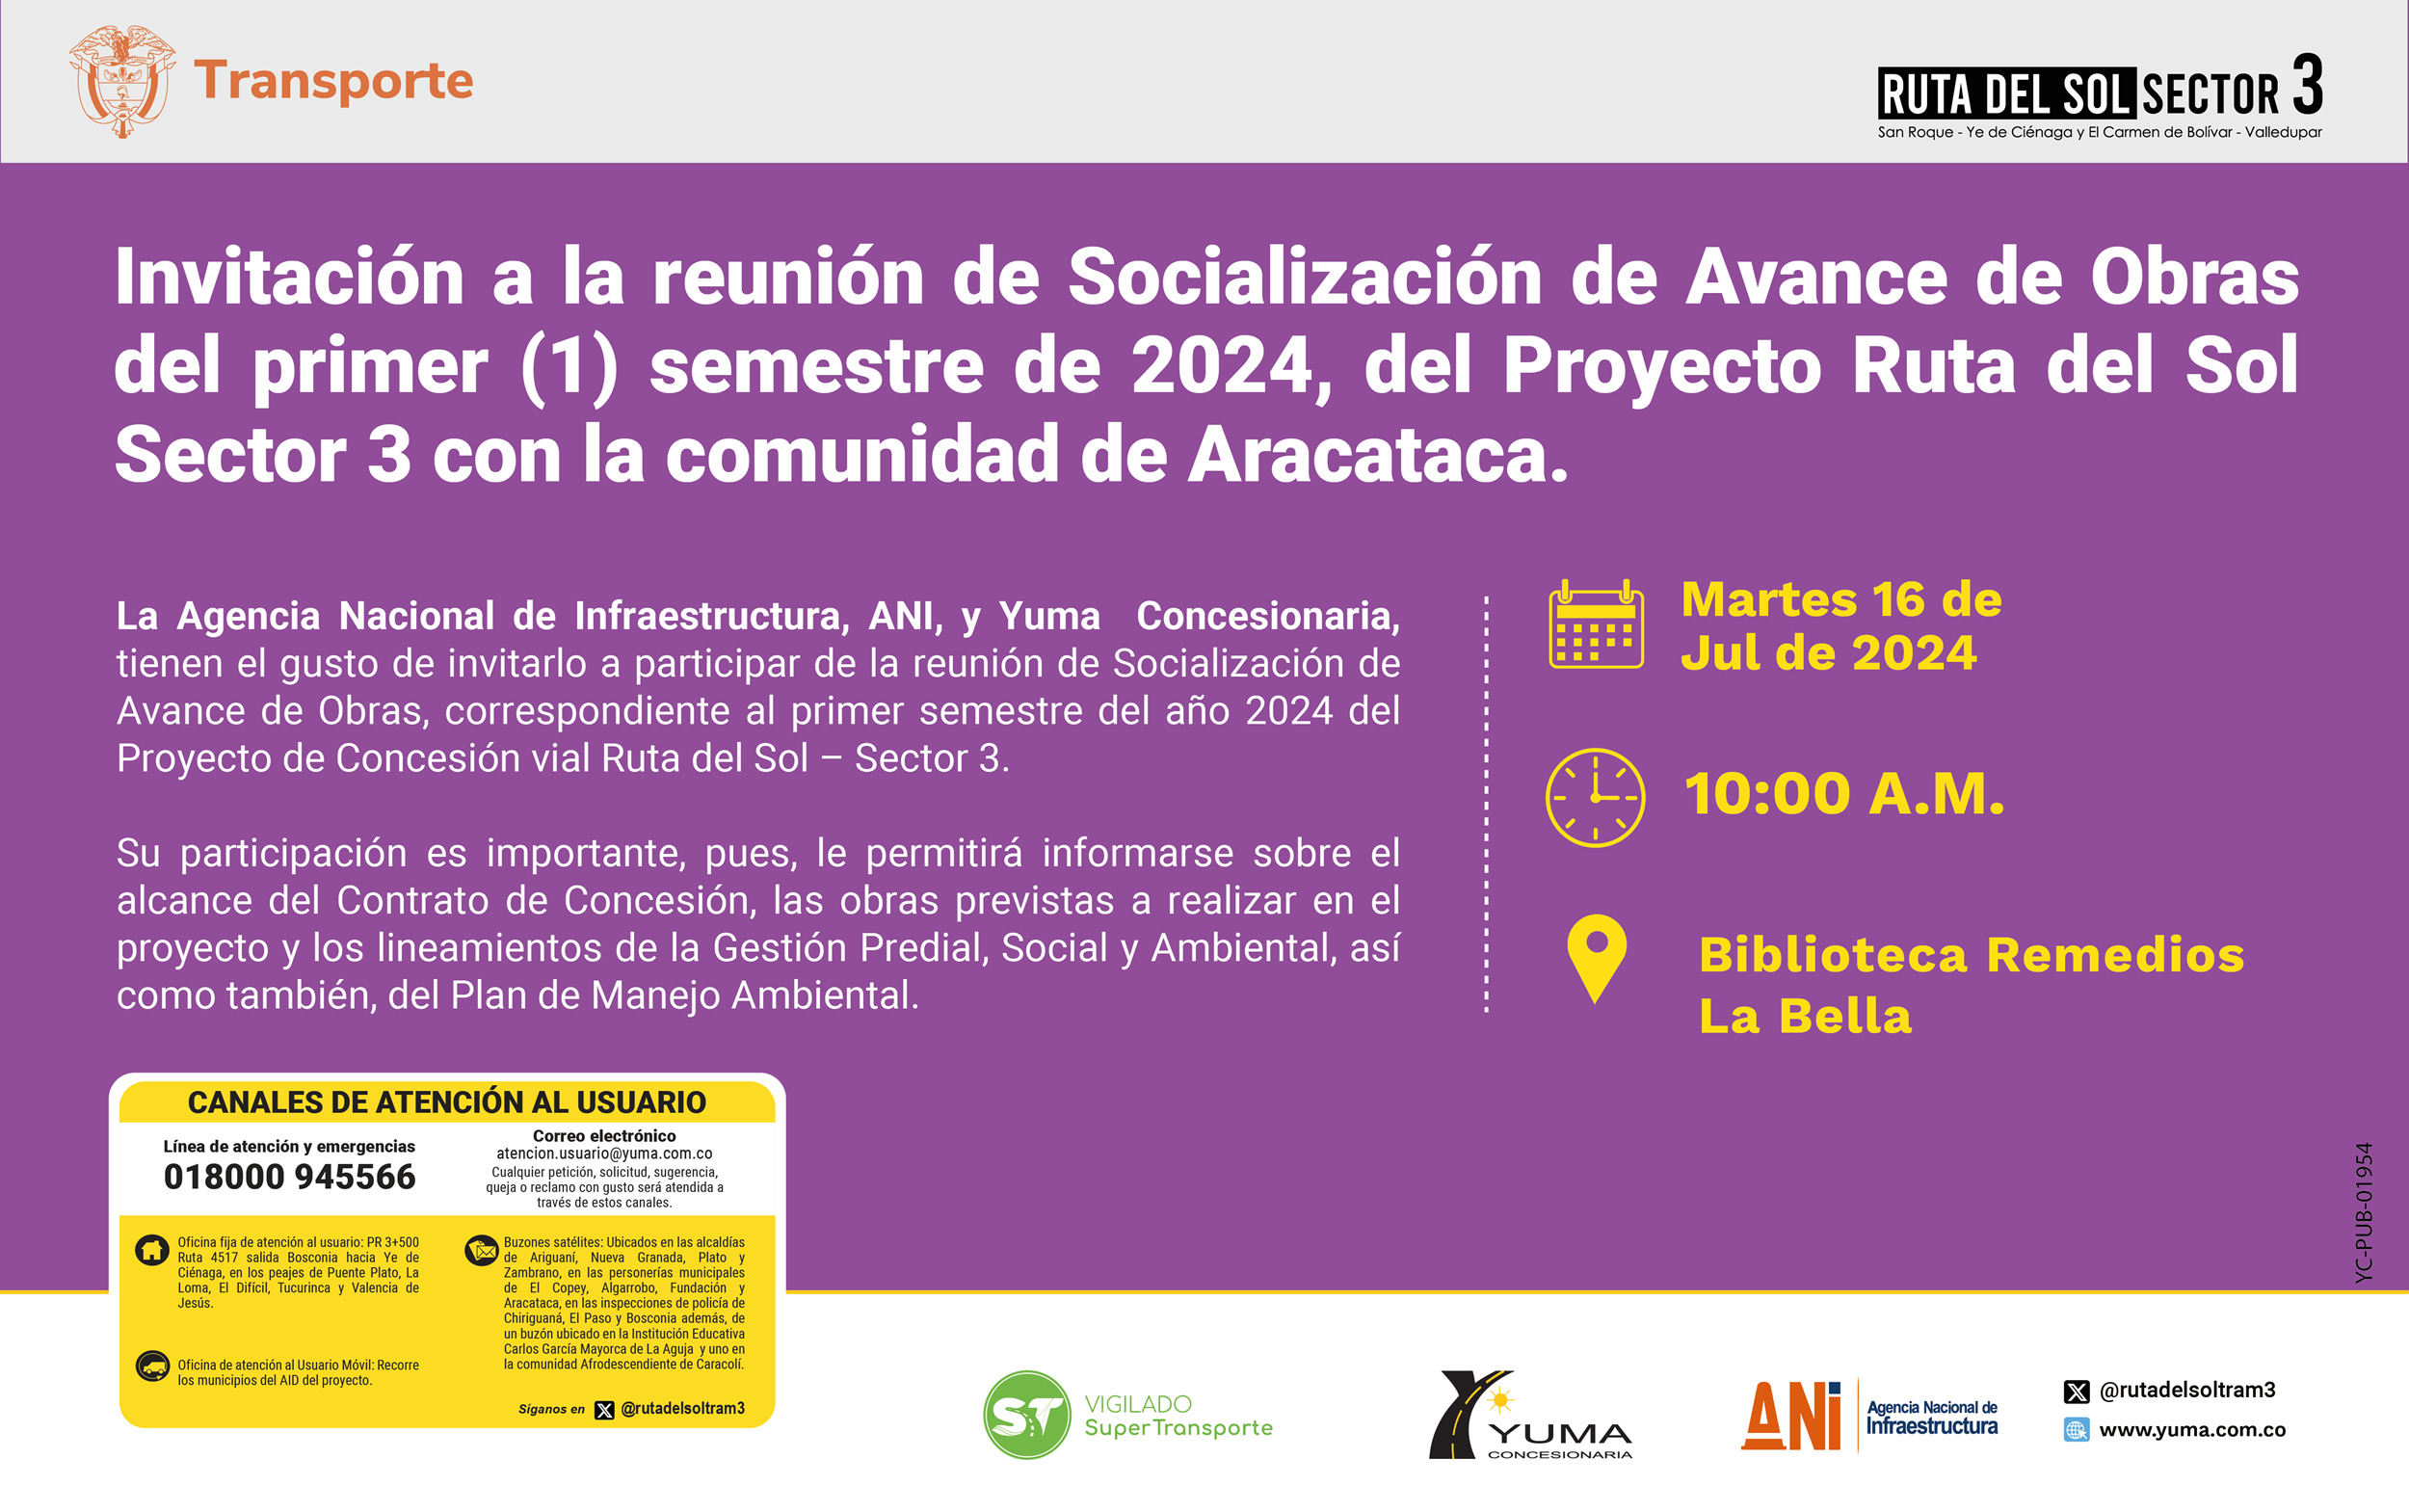 En este momento estás viendo Invitación a la reunión de Socialización de Avance de Obras del primer semestre de 2024 con la comunidad de Aracataca